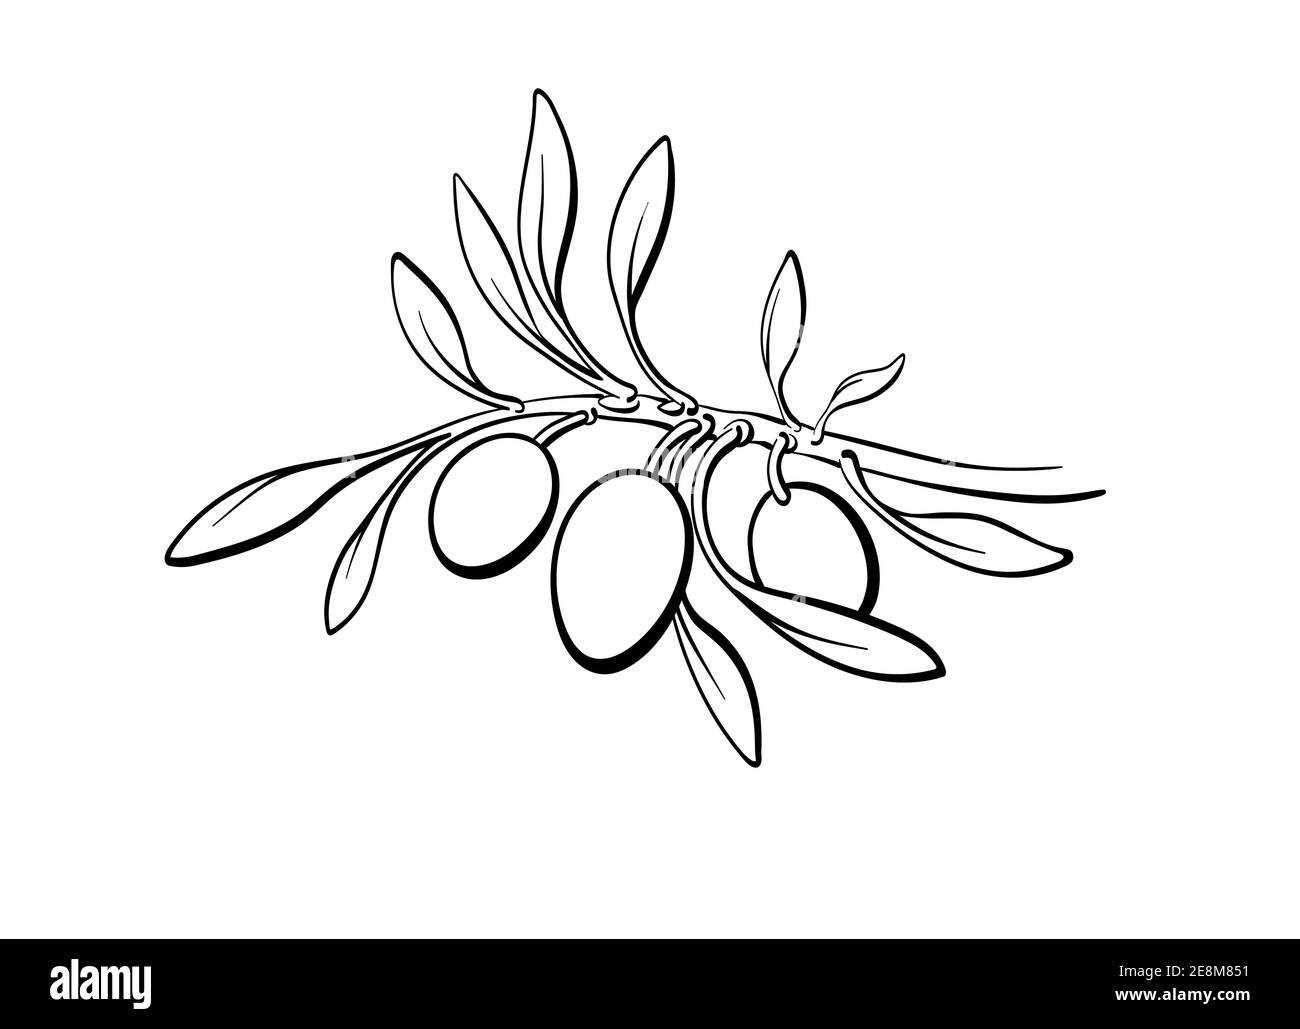 Ramificazione di olive, germogli, frutta matura. Vettore botanica semplice illustrazione su sfondo bianco. Immagine della linea grafica disegnata a mano. Olio organico Illustrazione Vettoriale